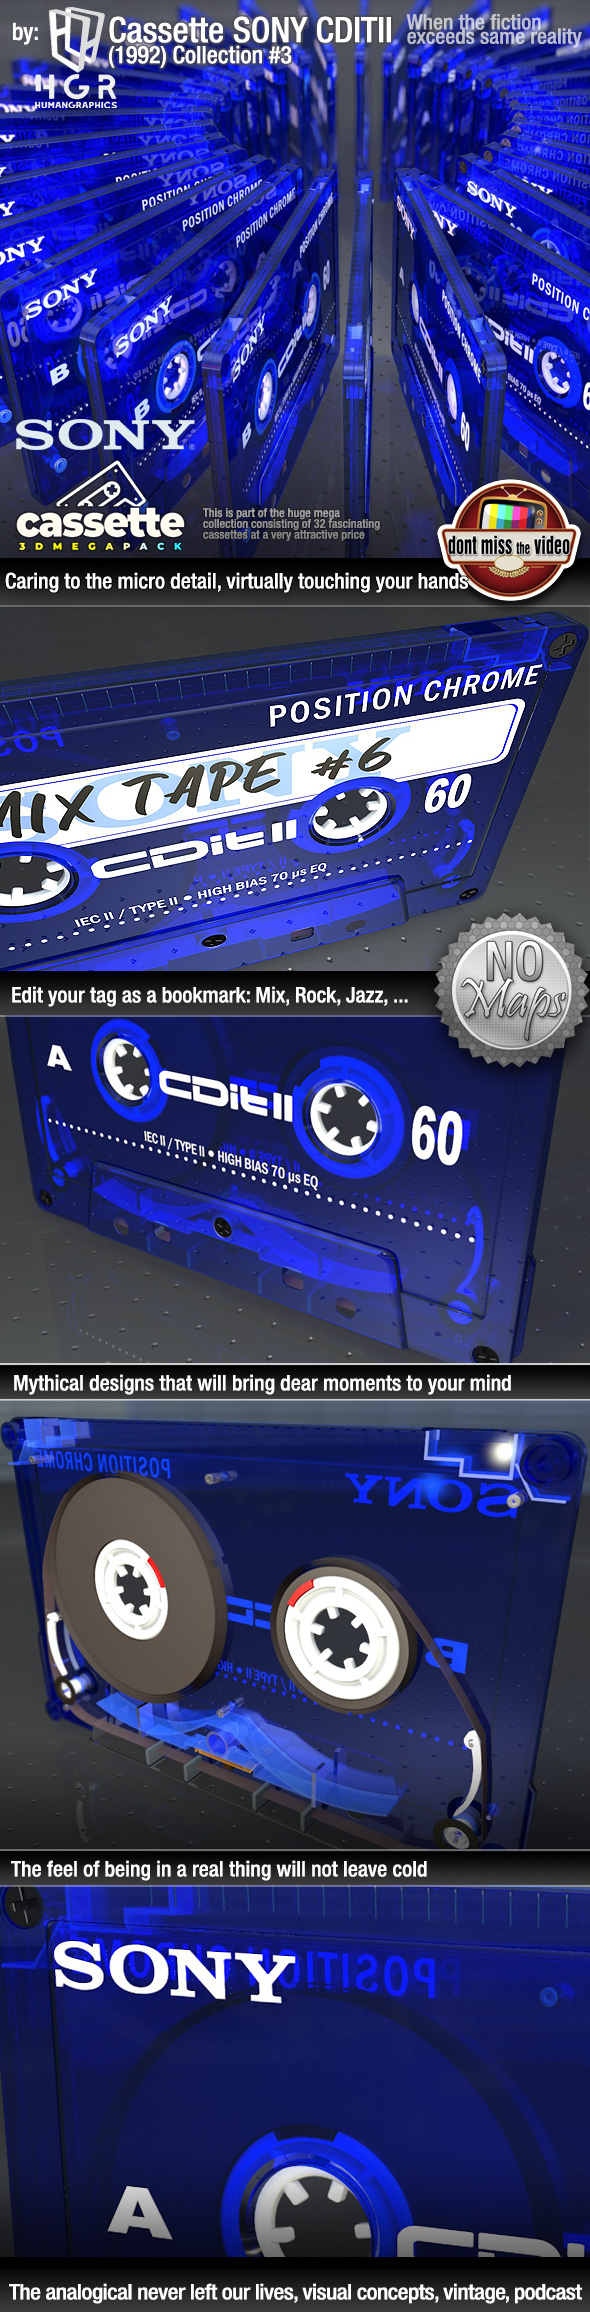 Cassette SONY CDI - 3Docean 26464182